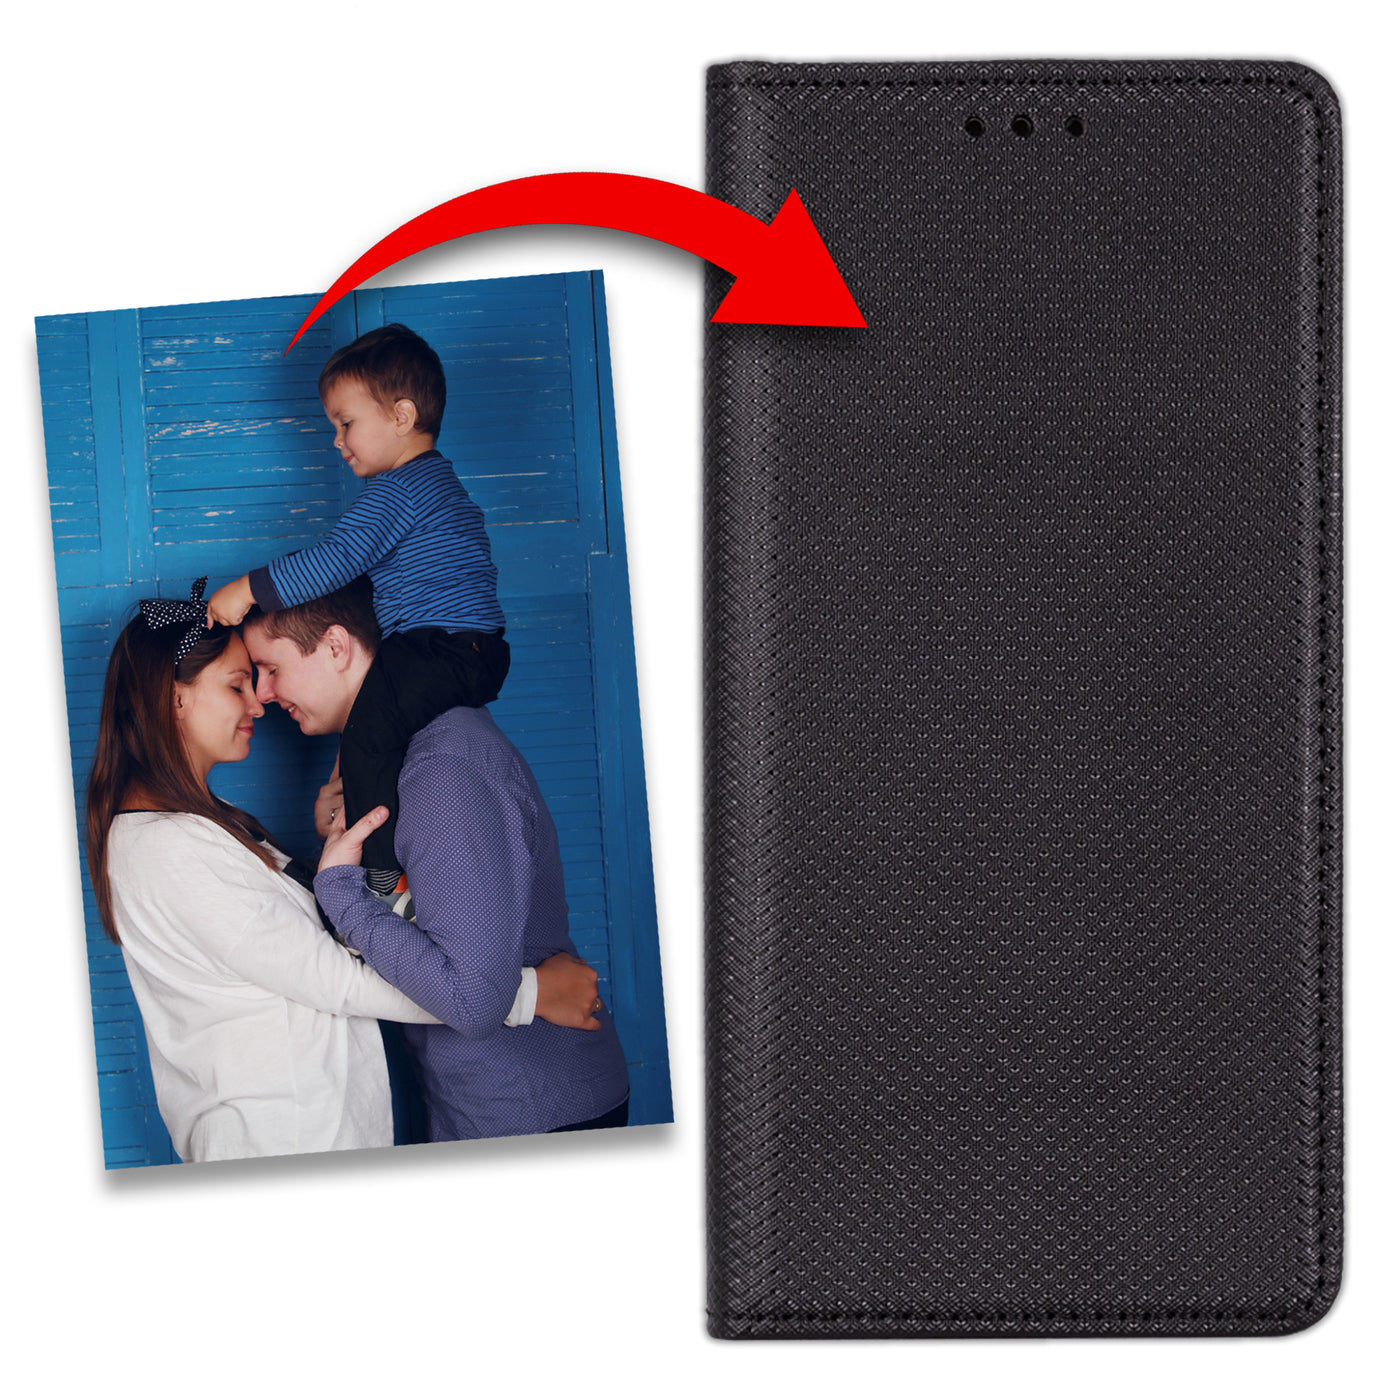 Handyhülle für Huawei P20 Plus personalisierte Hülle mit eigenem Bild Motiv Design Smart Magnet Klapphülle